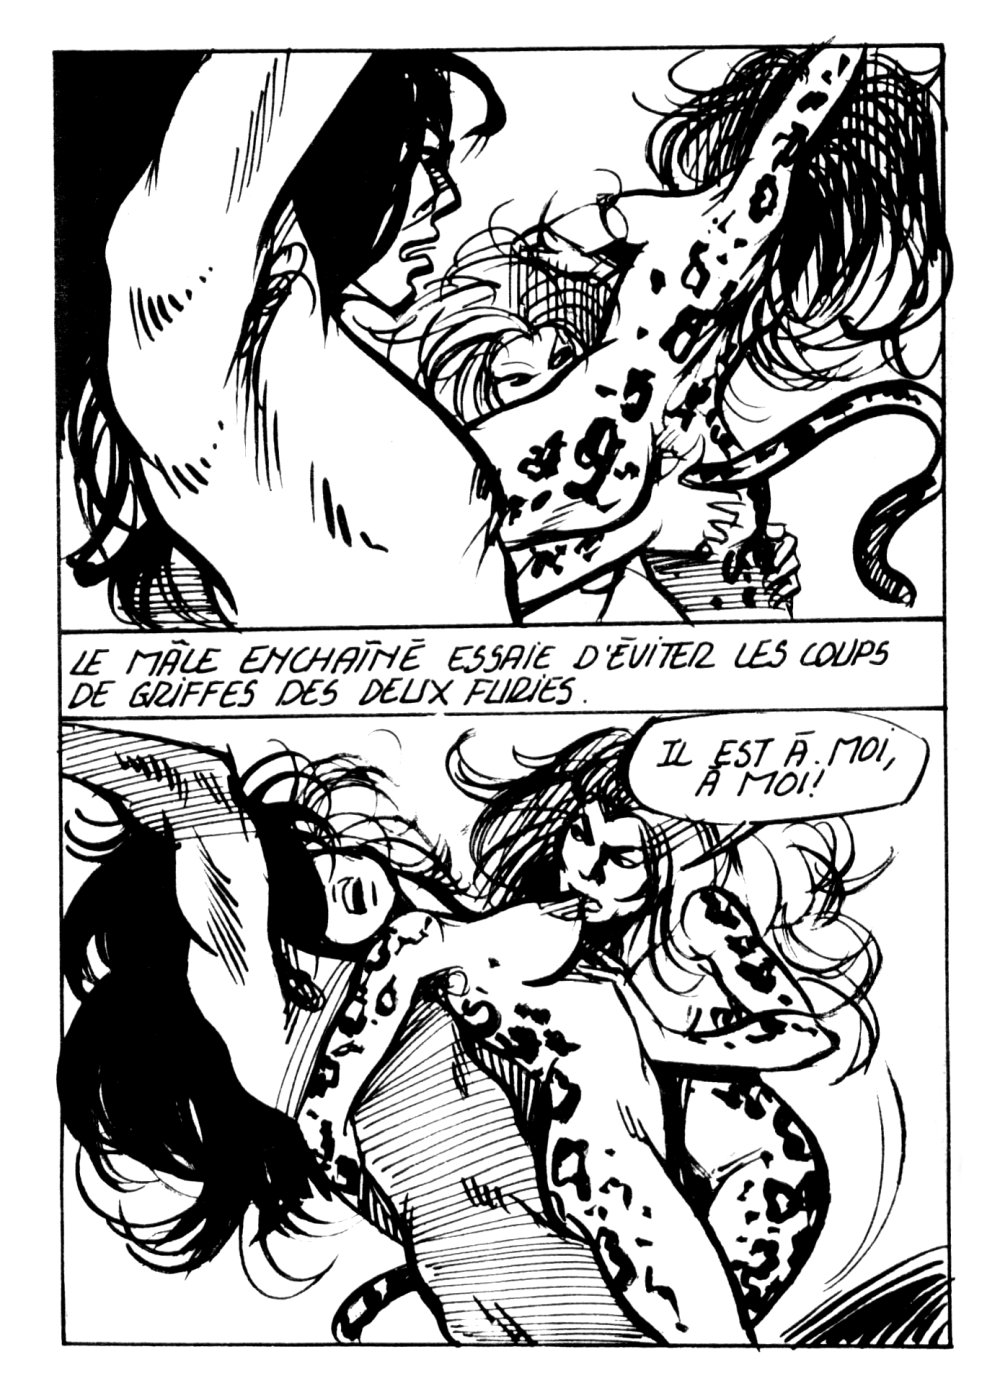 Condor- Volume 1 - Griffes de Femme numero d'image 60